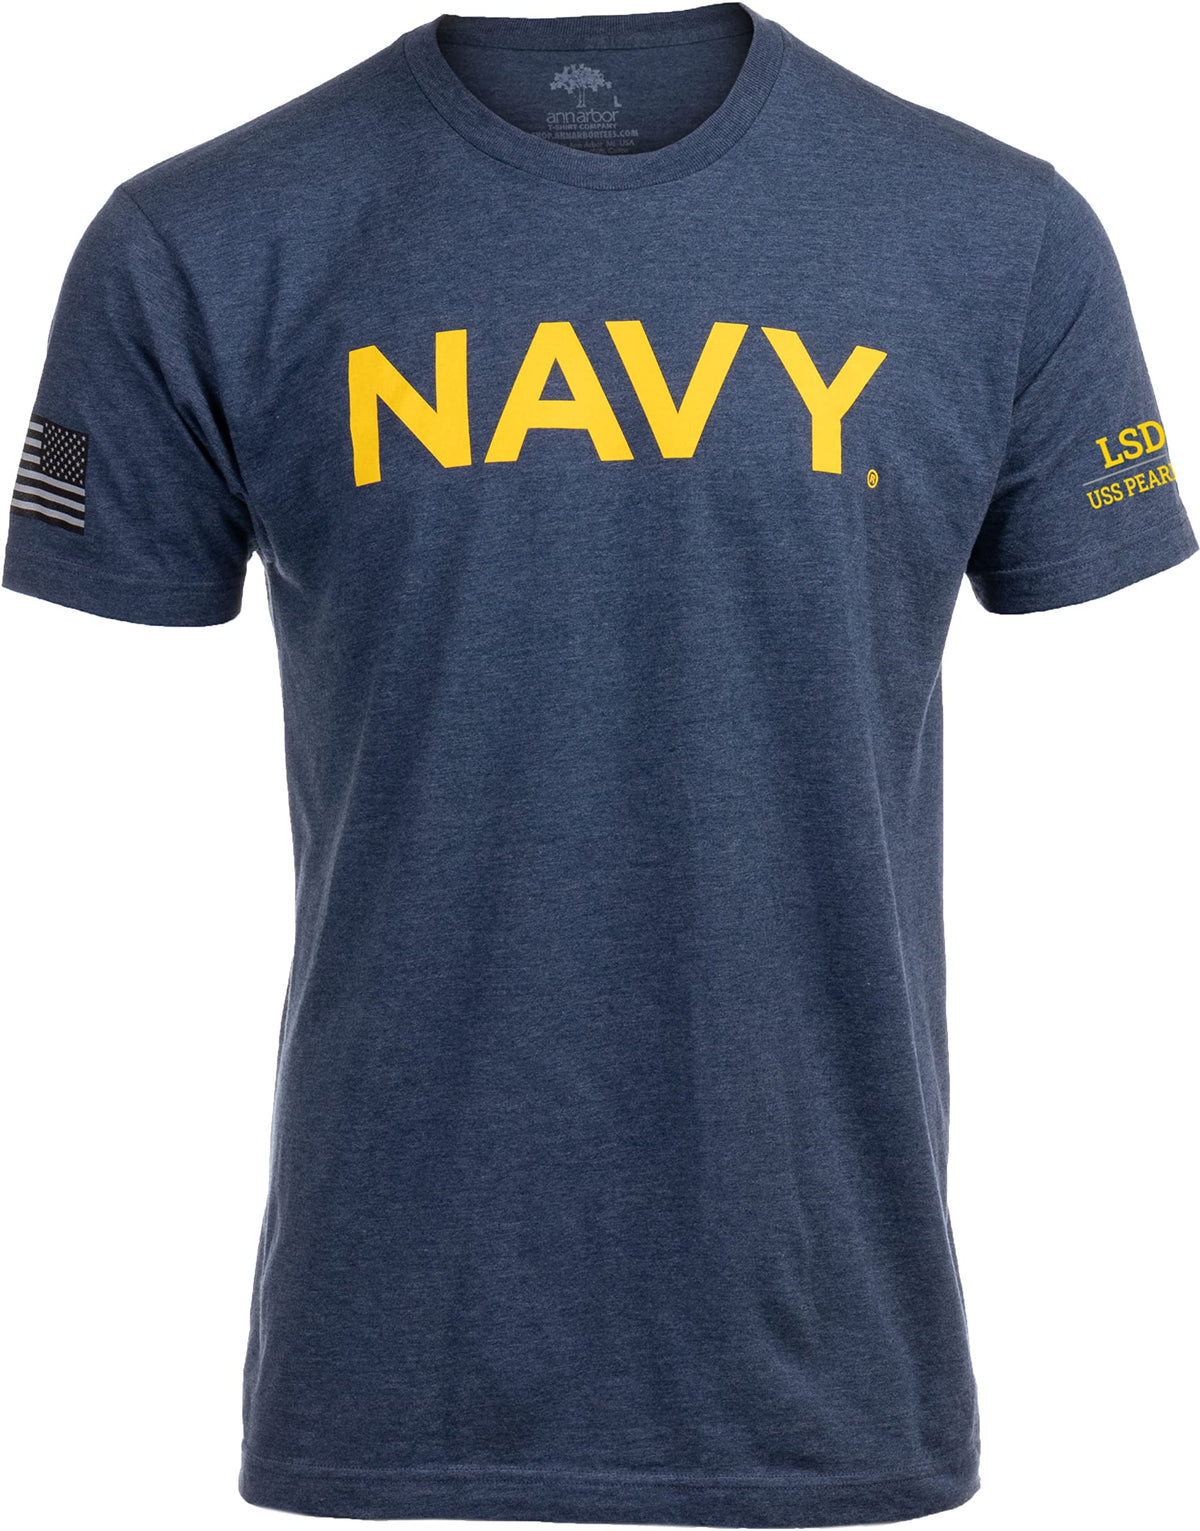 USS Pearl Harbor, LSD-52 | U.S. Navy Sailor Veteran USN United States Naval T-shirt for Men Women